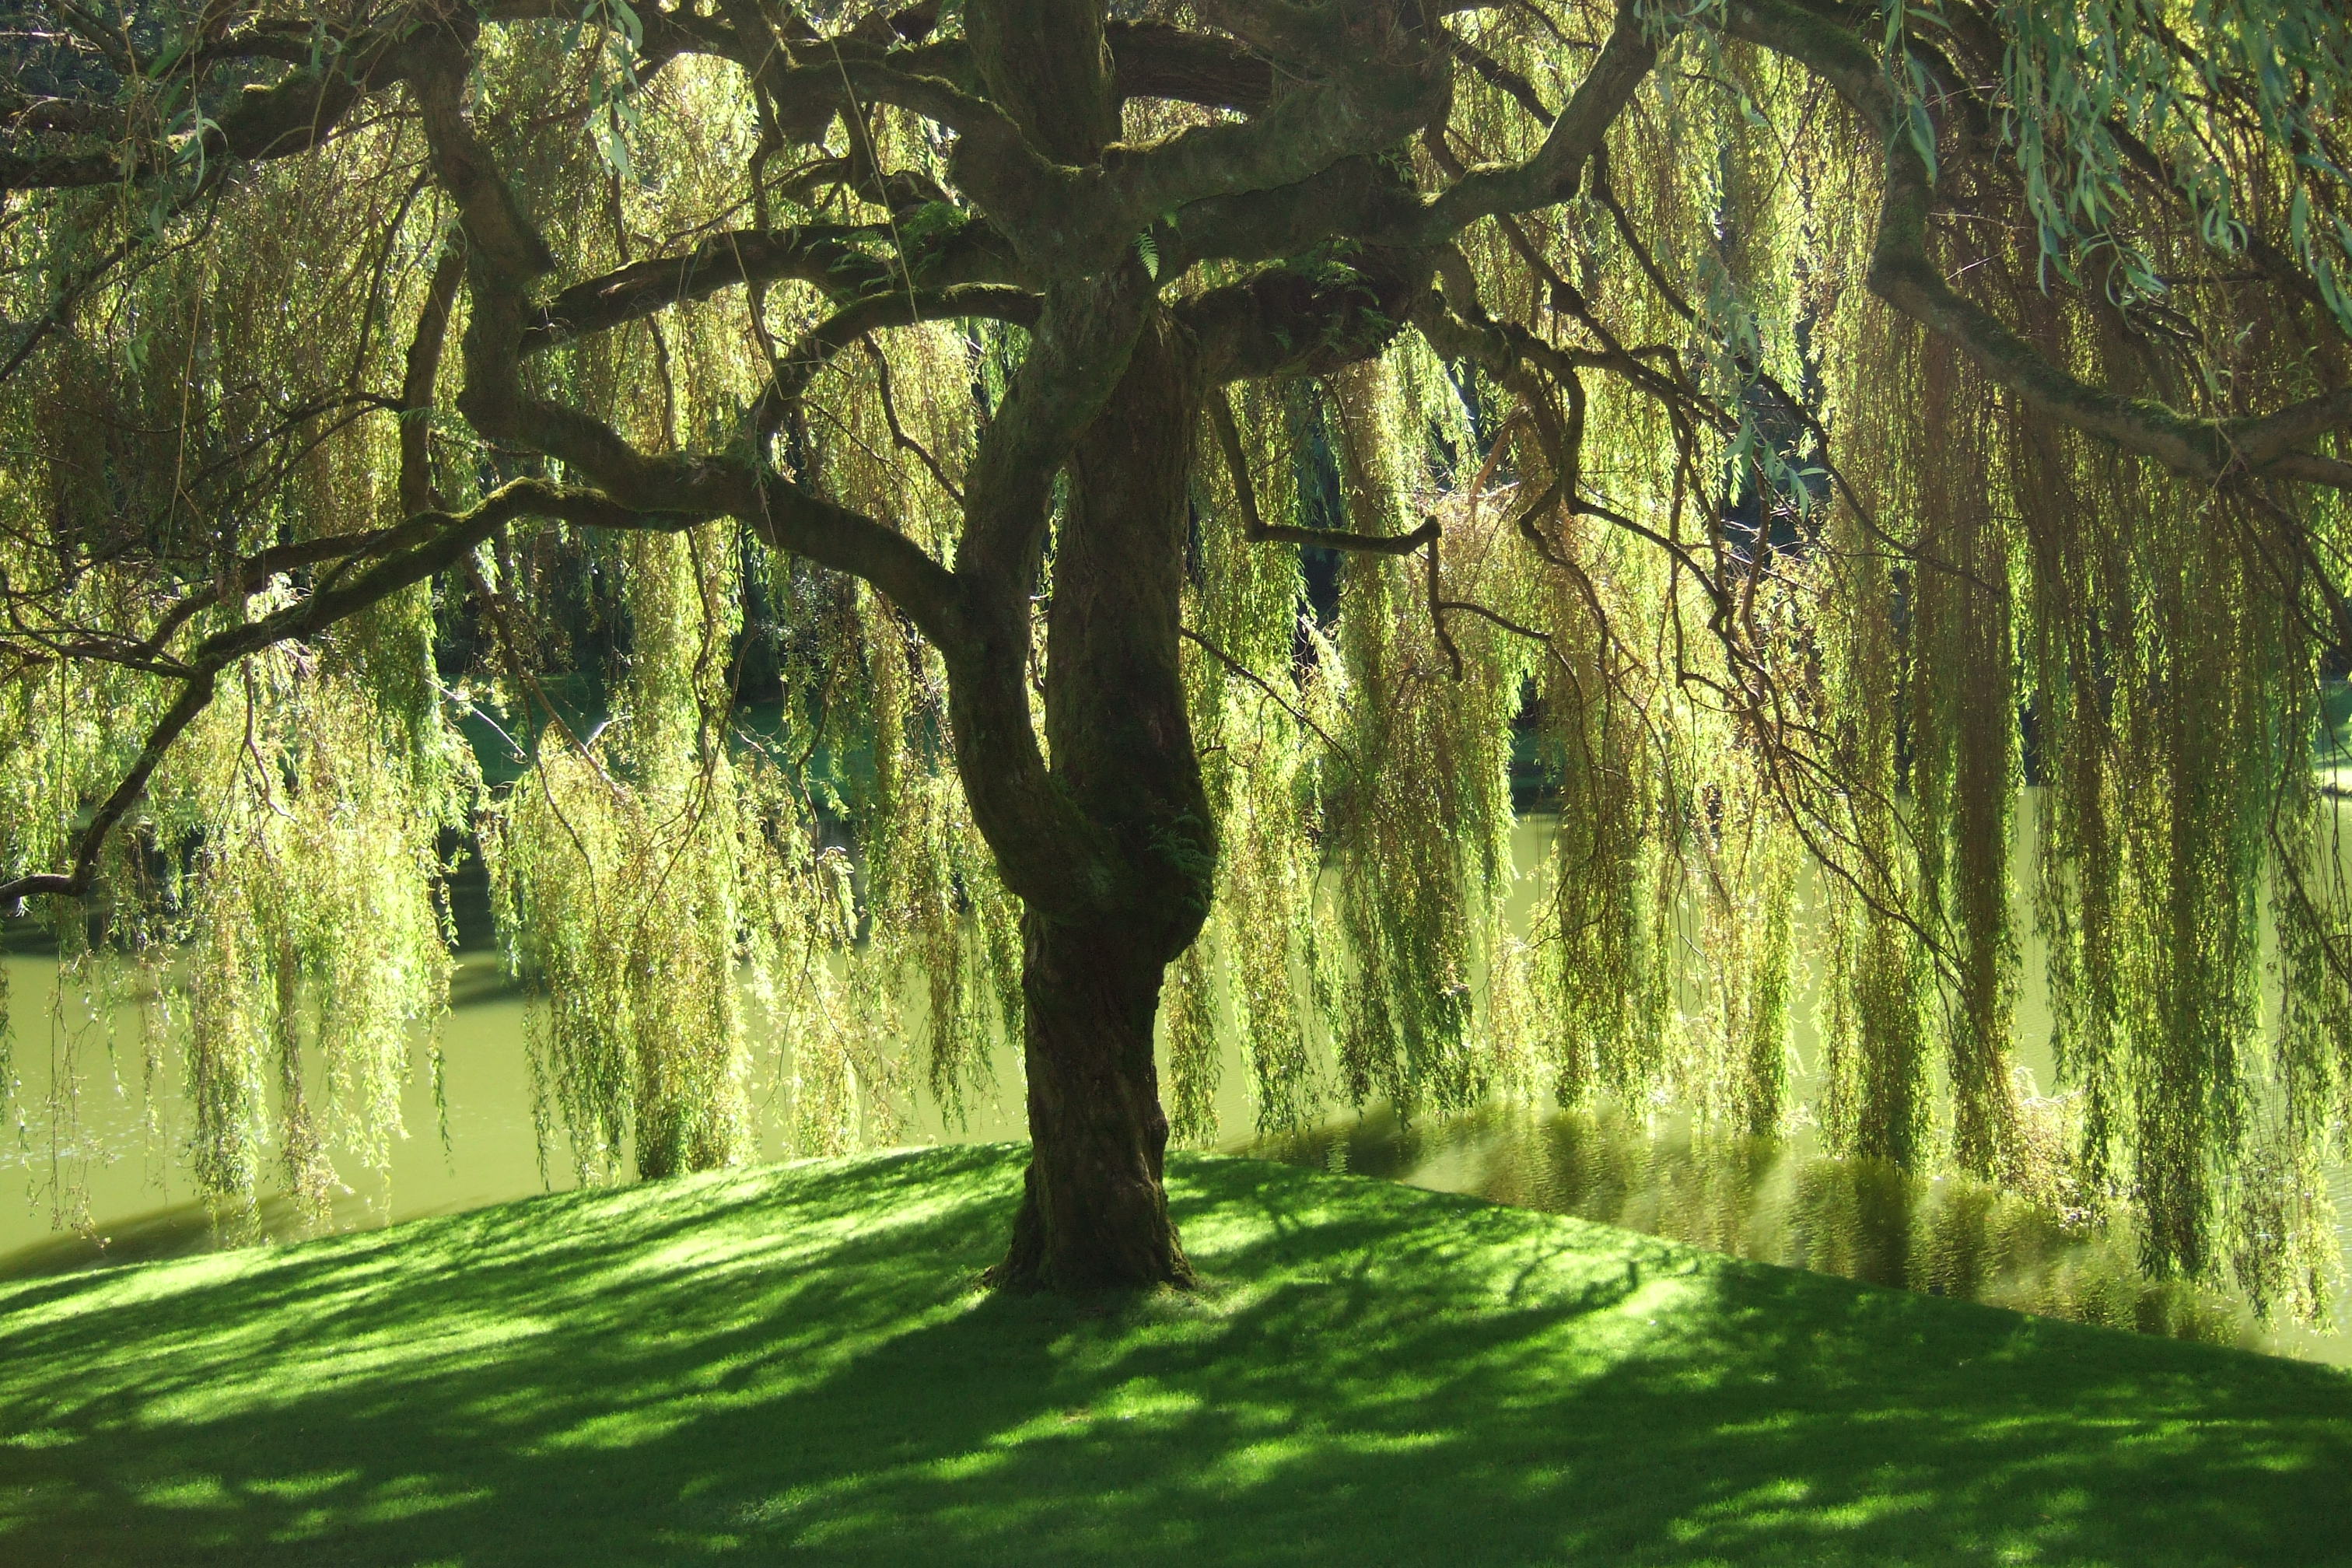 tree-magic-willow-the-dream-healer-essi-tolling-author